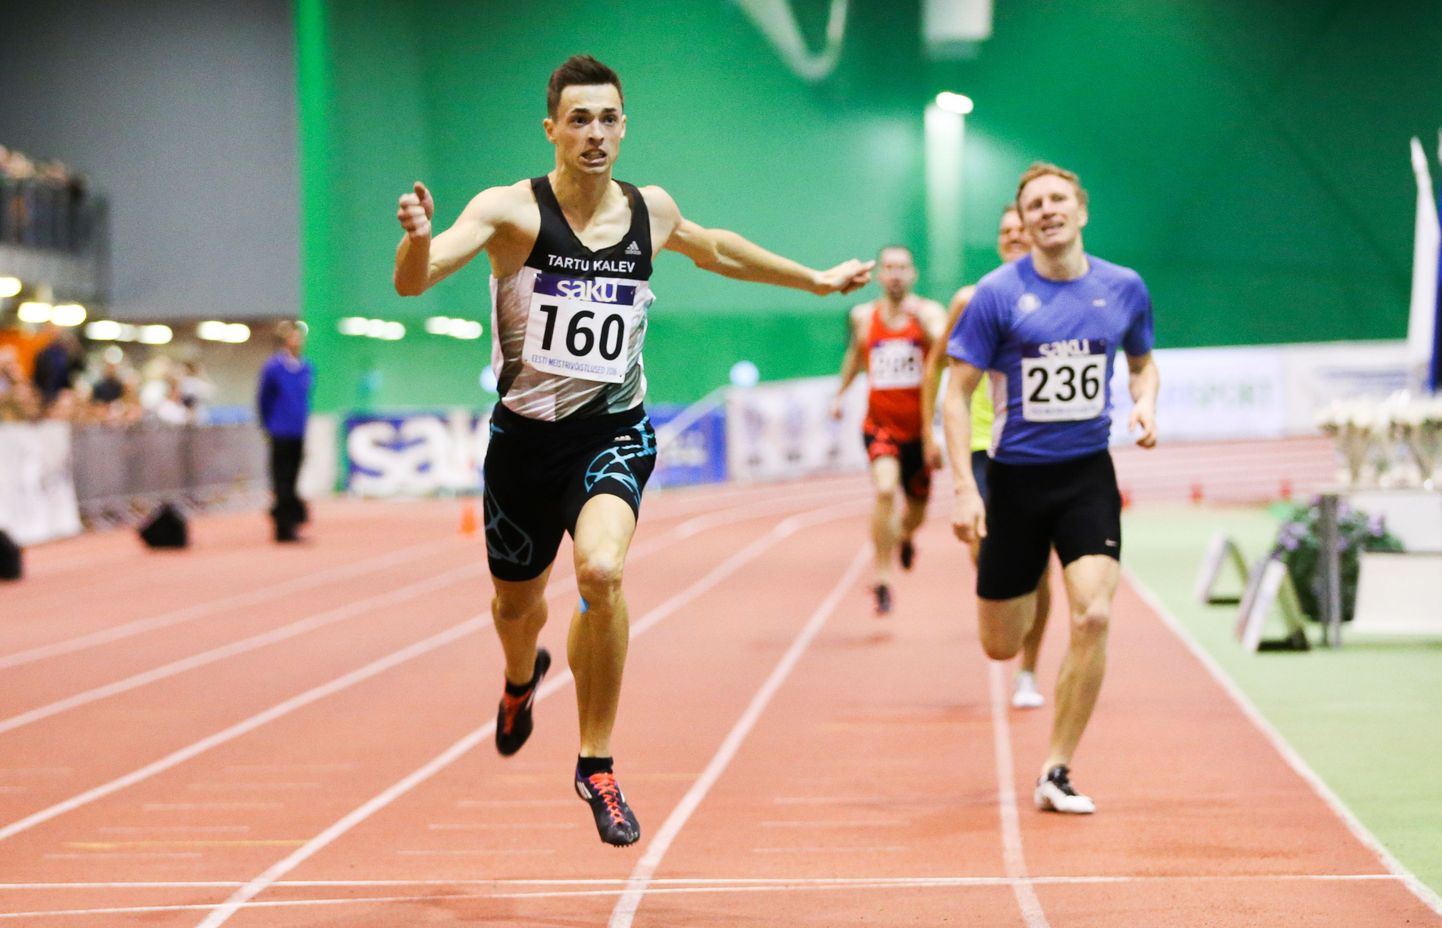 Mullustel Eesti meistrivõistlustel 400 meetri jooksus rekordajaga kulla võitnud Jaak-Heinrich Jagorit ei pruugi tänavu samal võistlusel stardis näha.